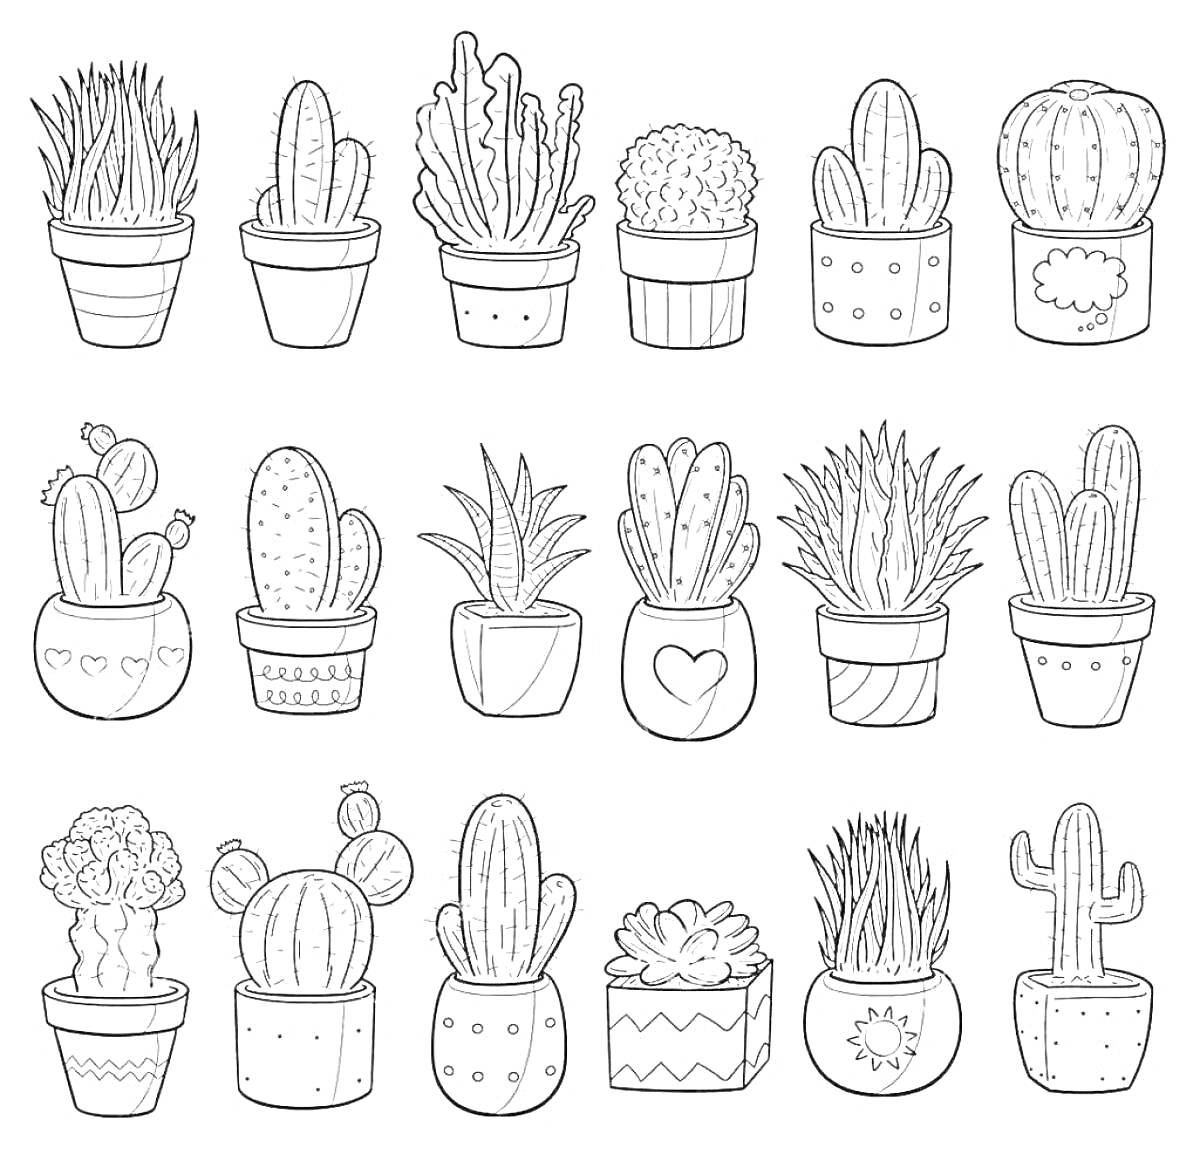 Раскраска Горшки с различными кактусами и суккулентами